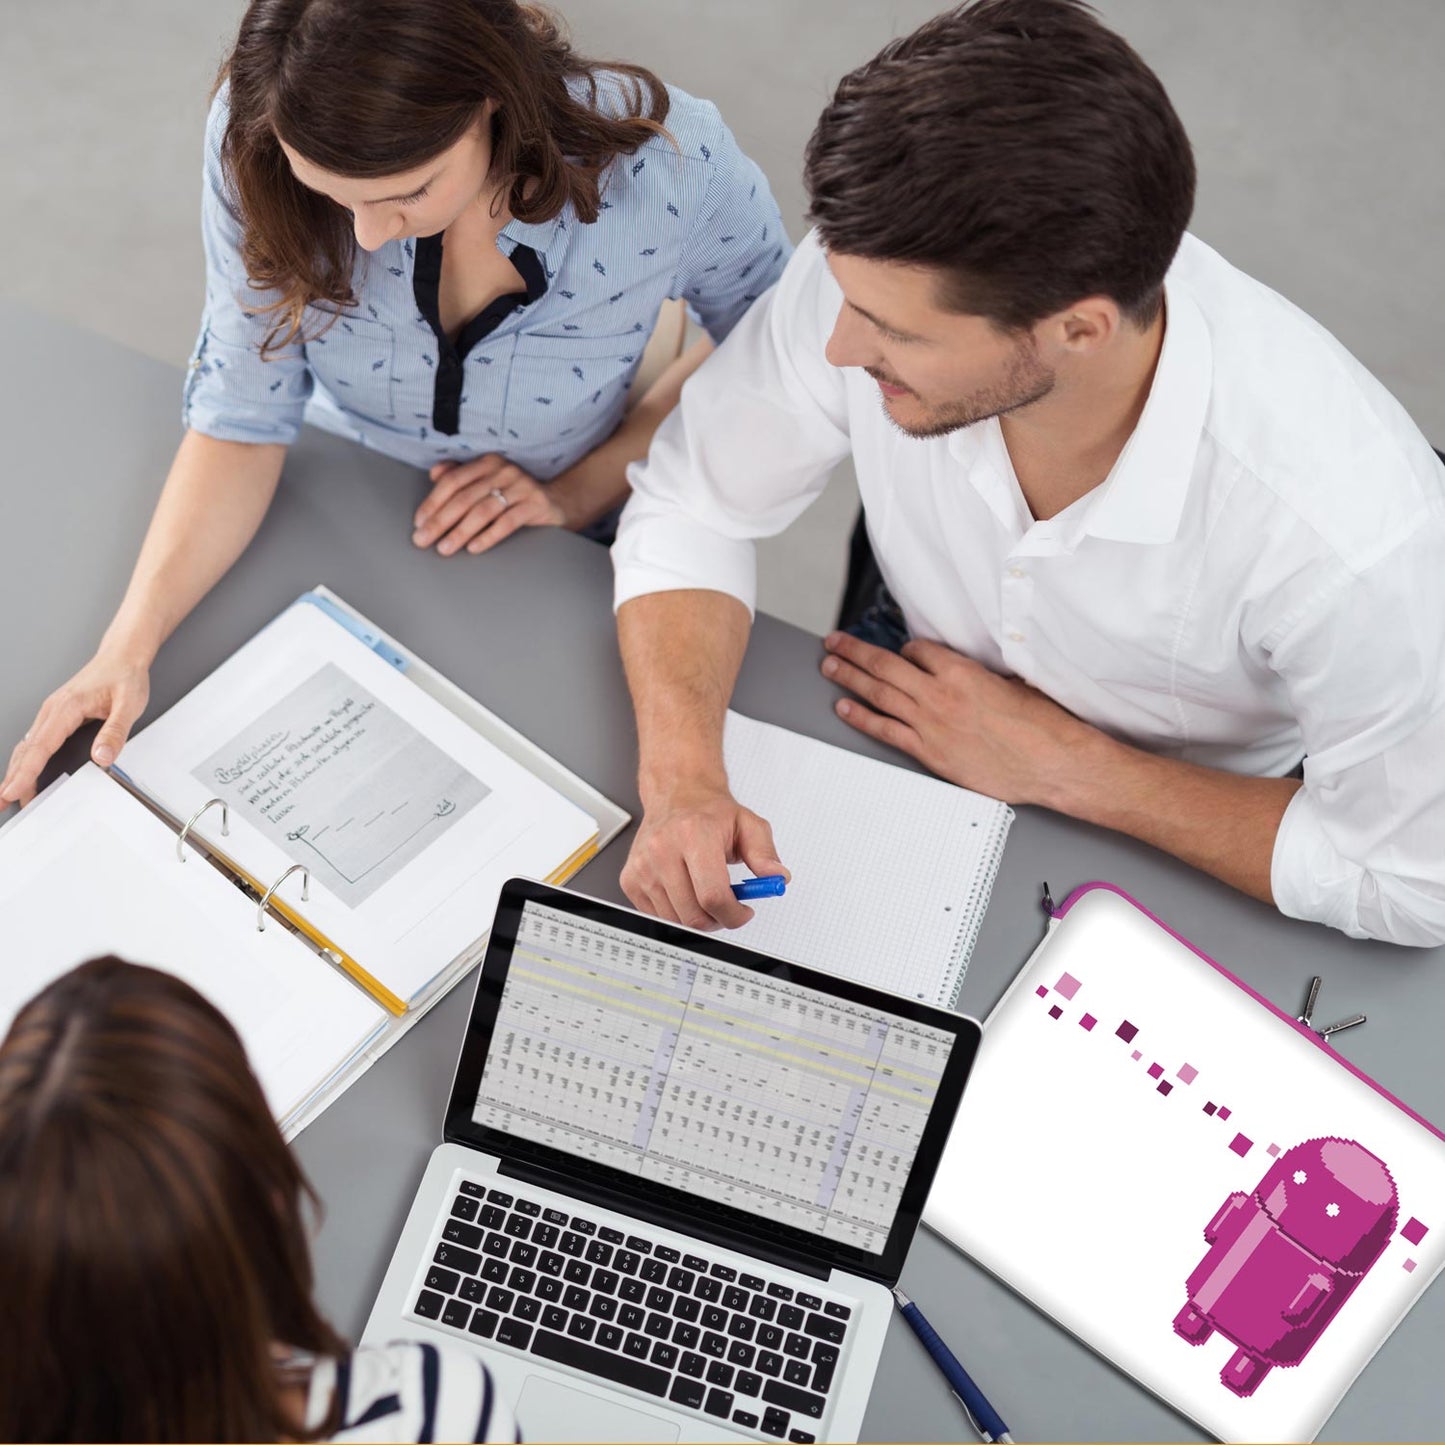 LS127 Pink Robot Designer Laptop Schutzhülle in weiß-pink als Business-Zubehör im Büro, bei Kunden und auf Dienstreisen